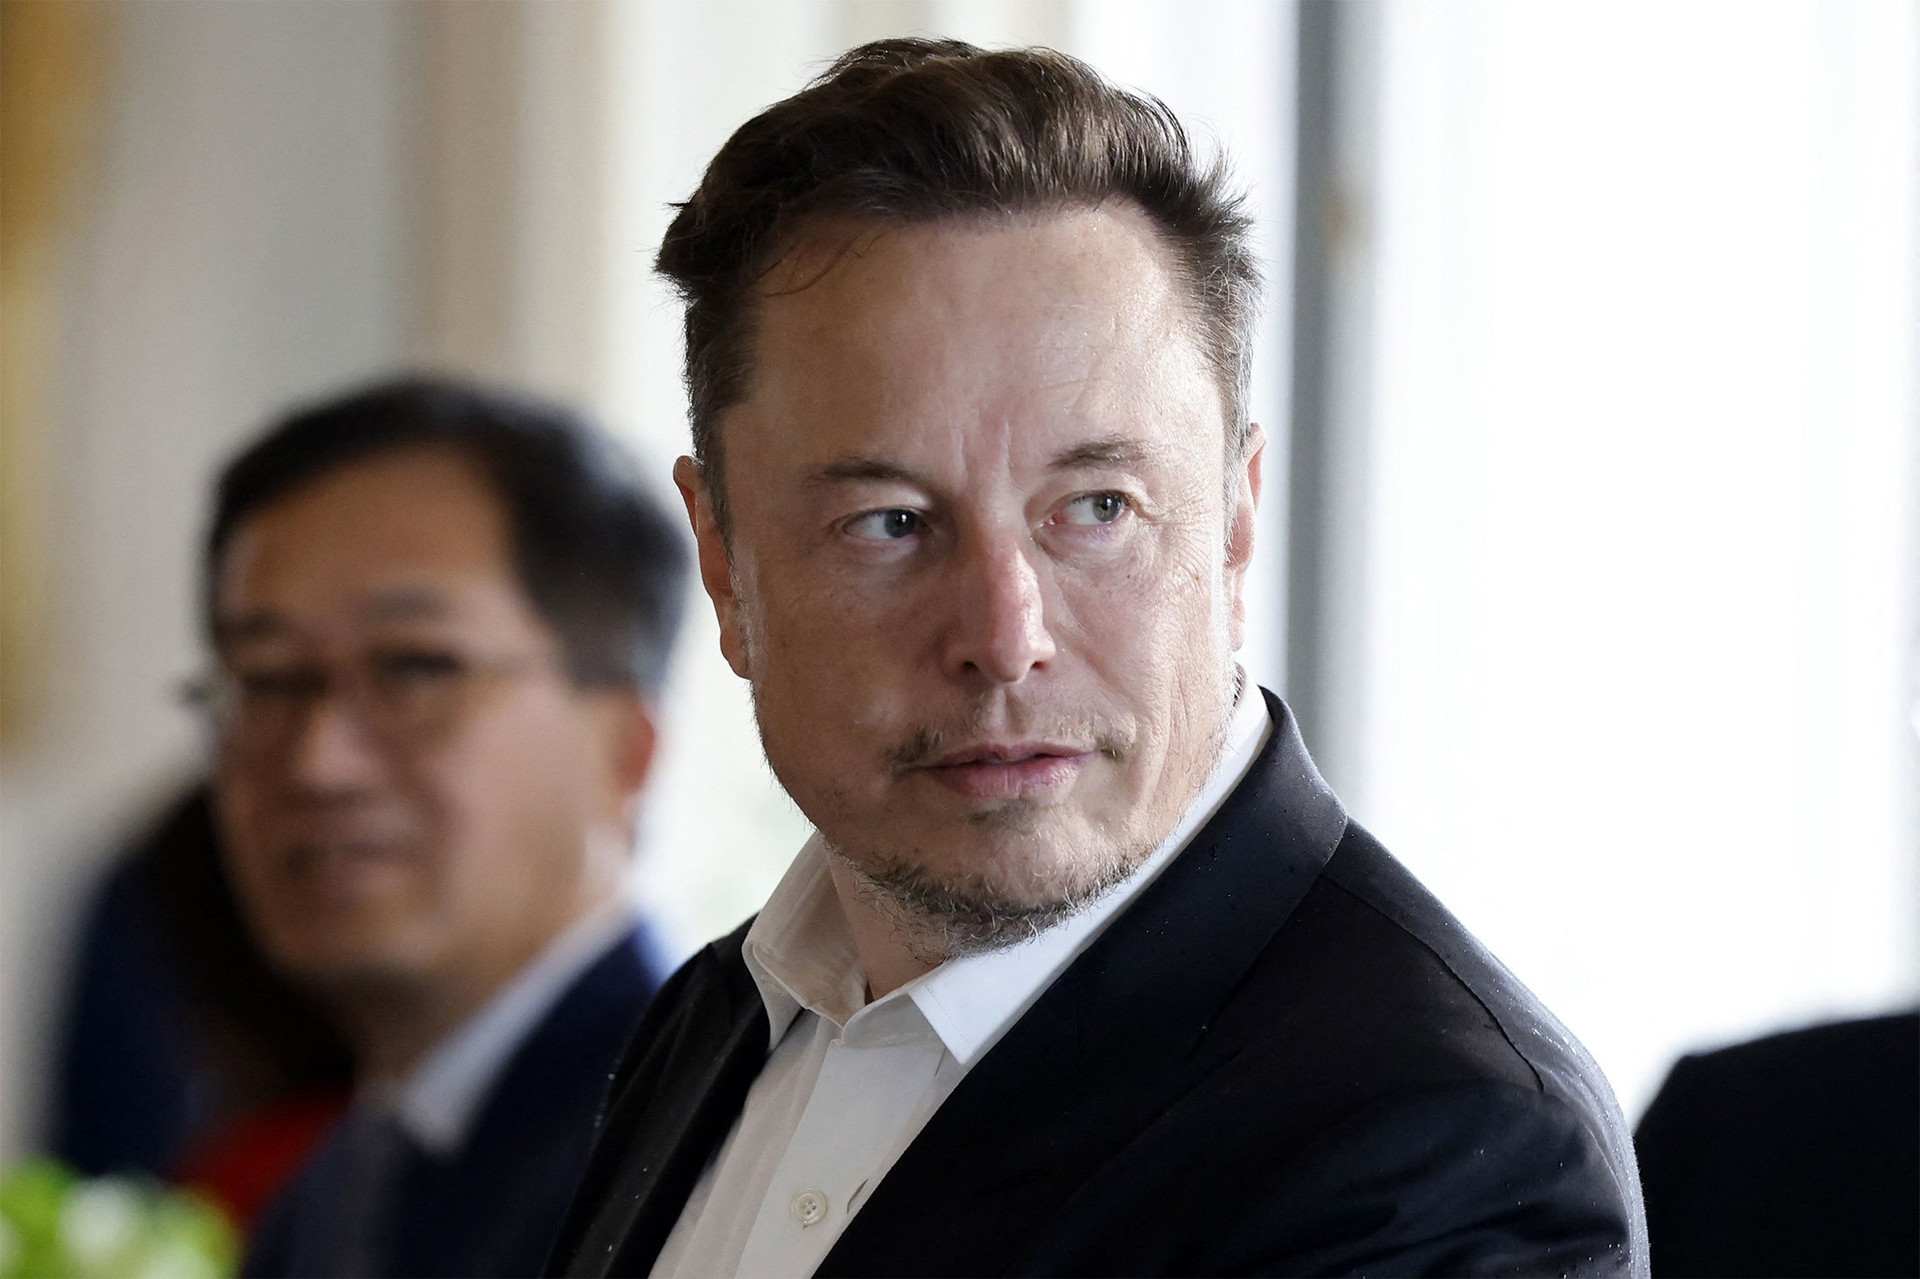 Phỏng vấn Elon Musk: Chỉ nghỉ 2-3 ngày mỗi năm, nói gì mình thích cho dù bị mất tiền và quyết định sẽ 'hạ mình' chi tiền quảng cáo xe Tesla - Ảnh 1.